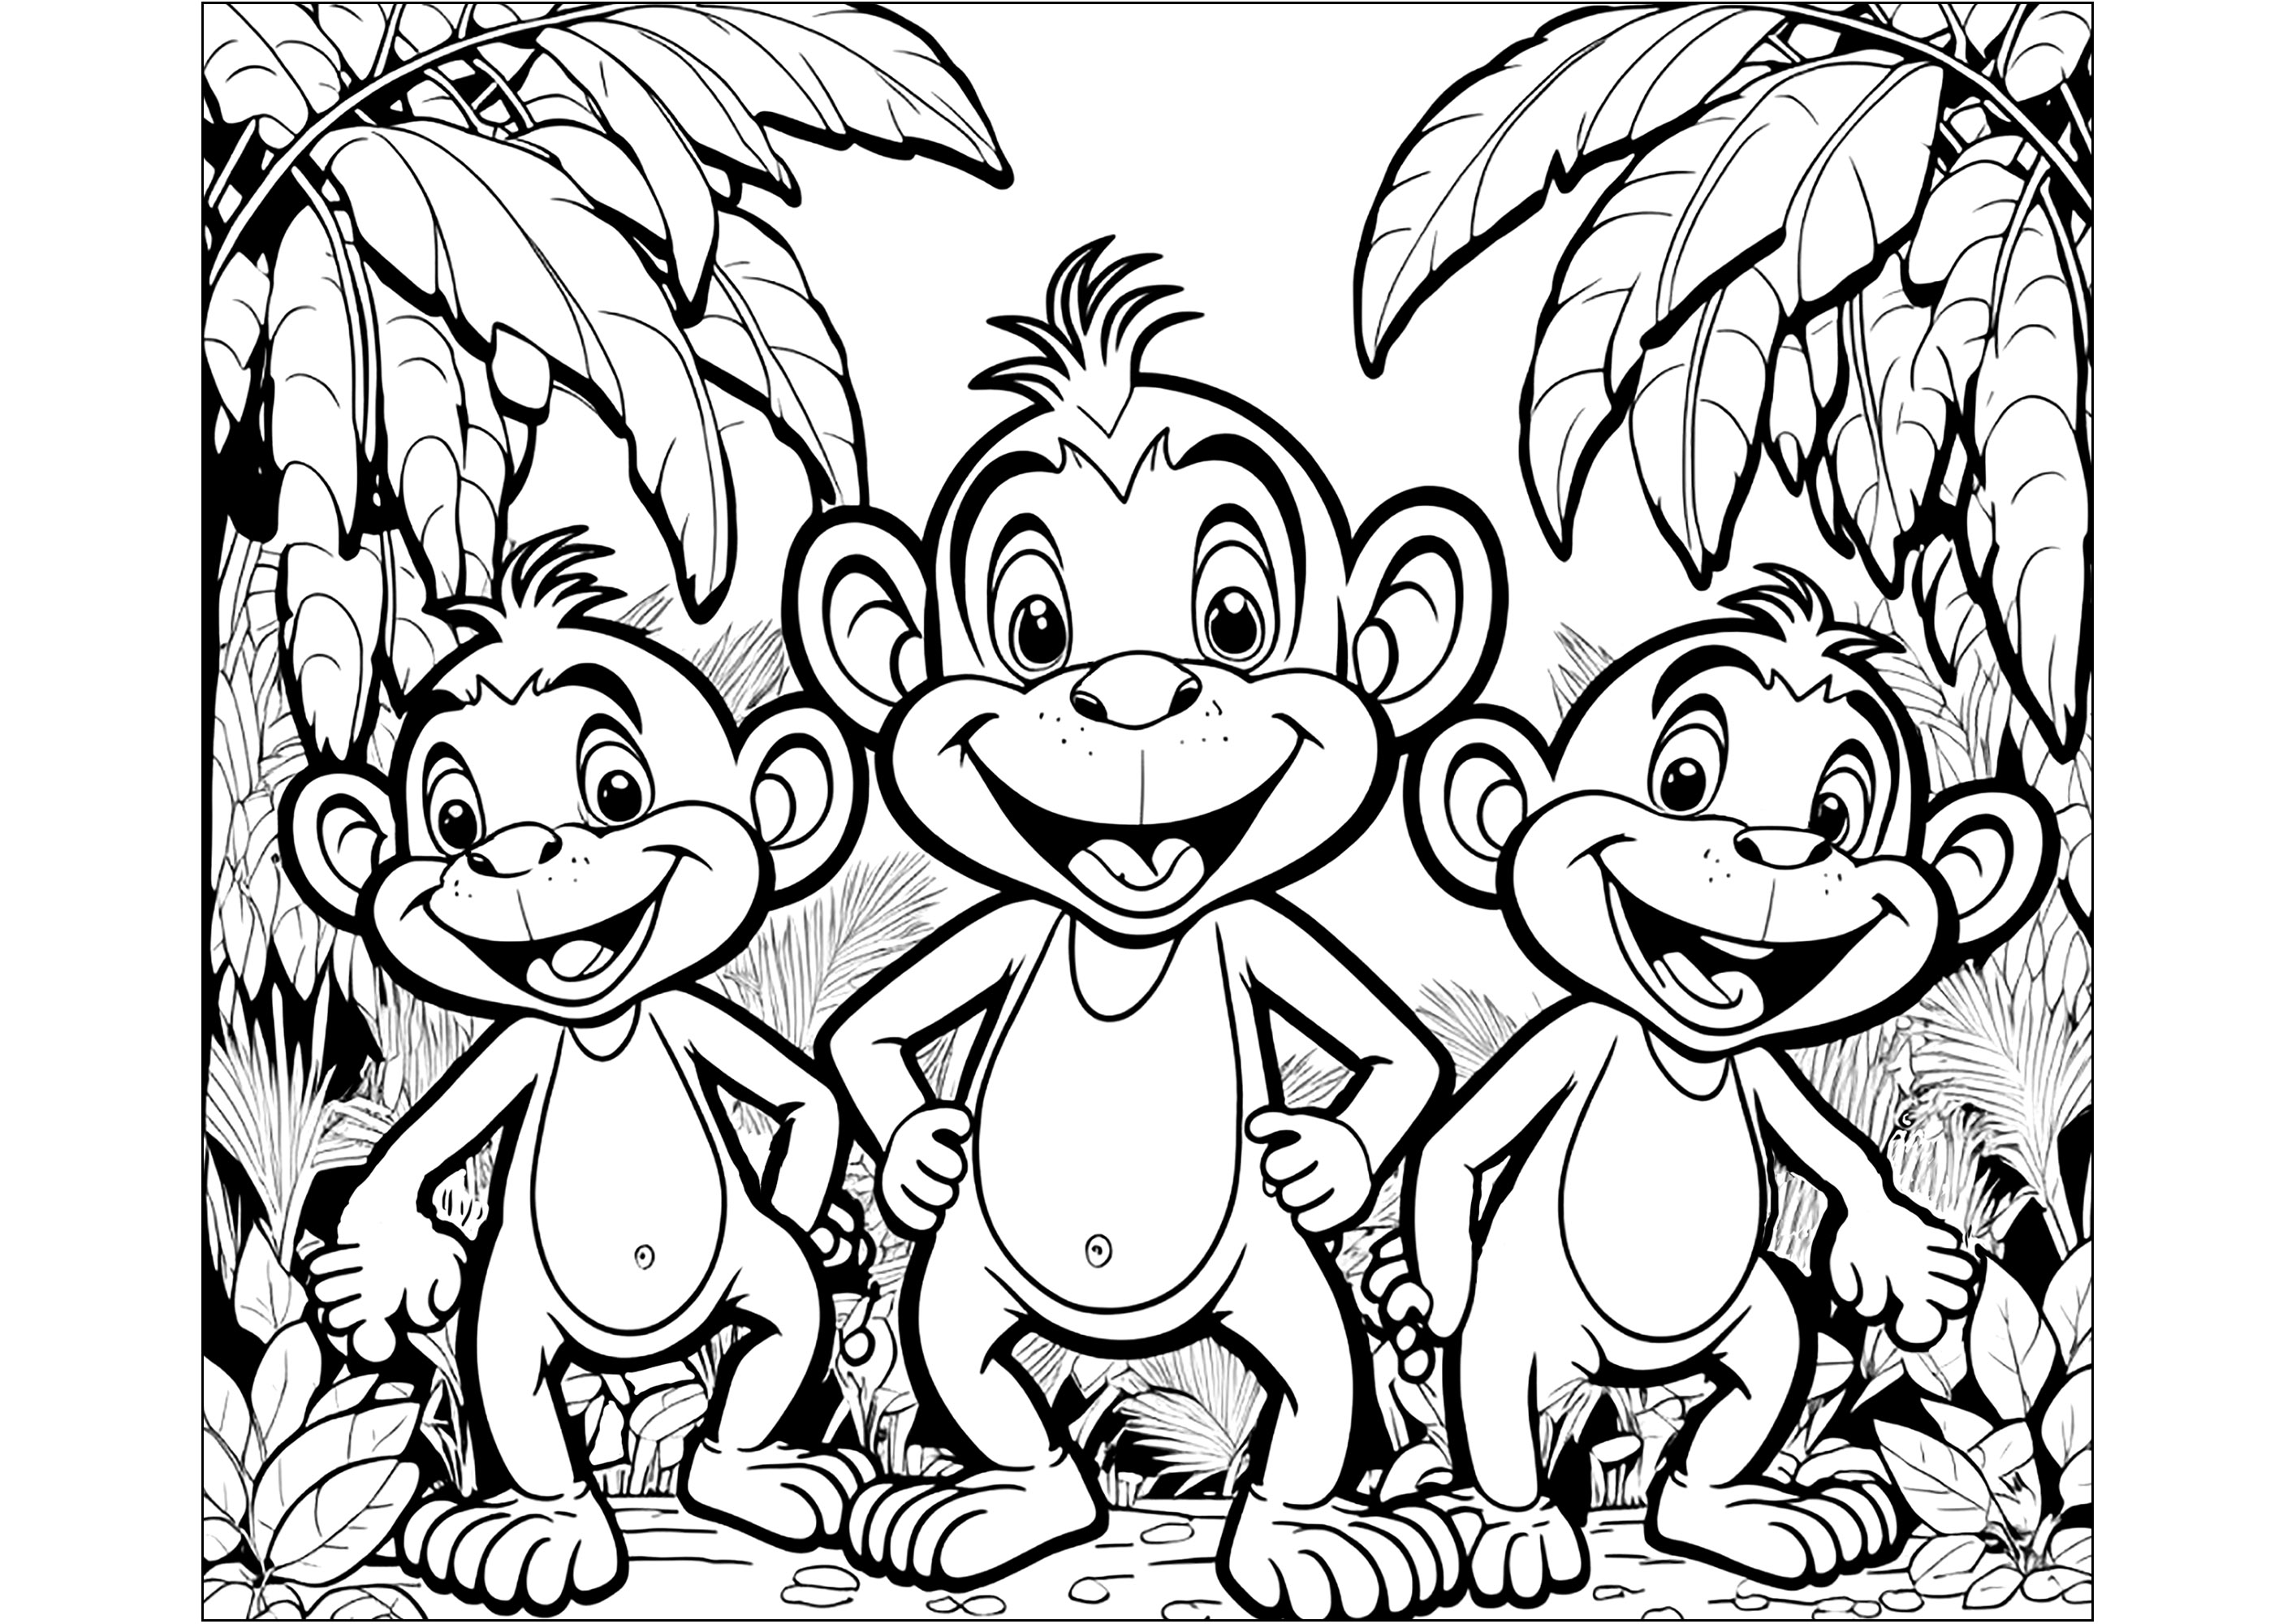 Coloração de três jovens Macacos na selva. Esta página de coloração é perfeita para crianças que amam os animais e a natureza. Mostra três jovens Macacos a divertirem-se na selva. Esta página de coloração é perfeita para desenvolver a sua imaginação e criatividade.